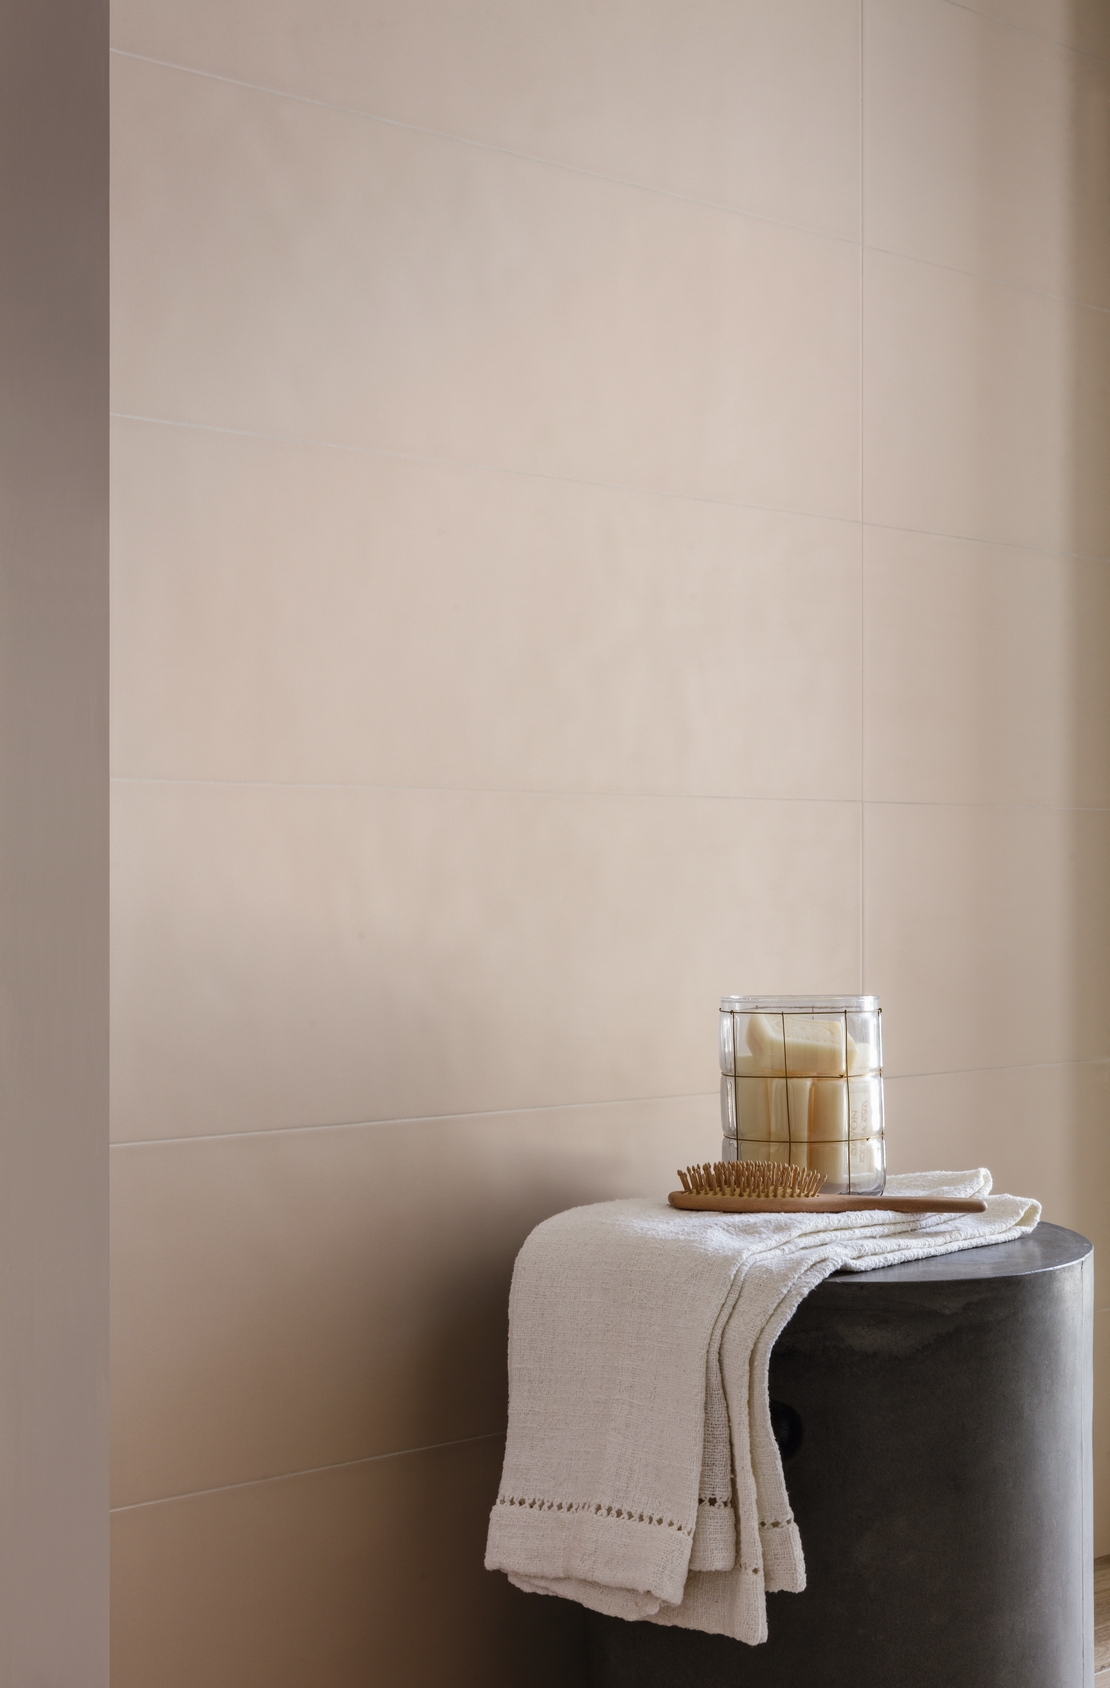 Bagno moderno minimalista. Rivestimento in piastrelle beige - rosa opaco - Ambienti Iperceramica